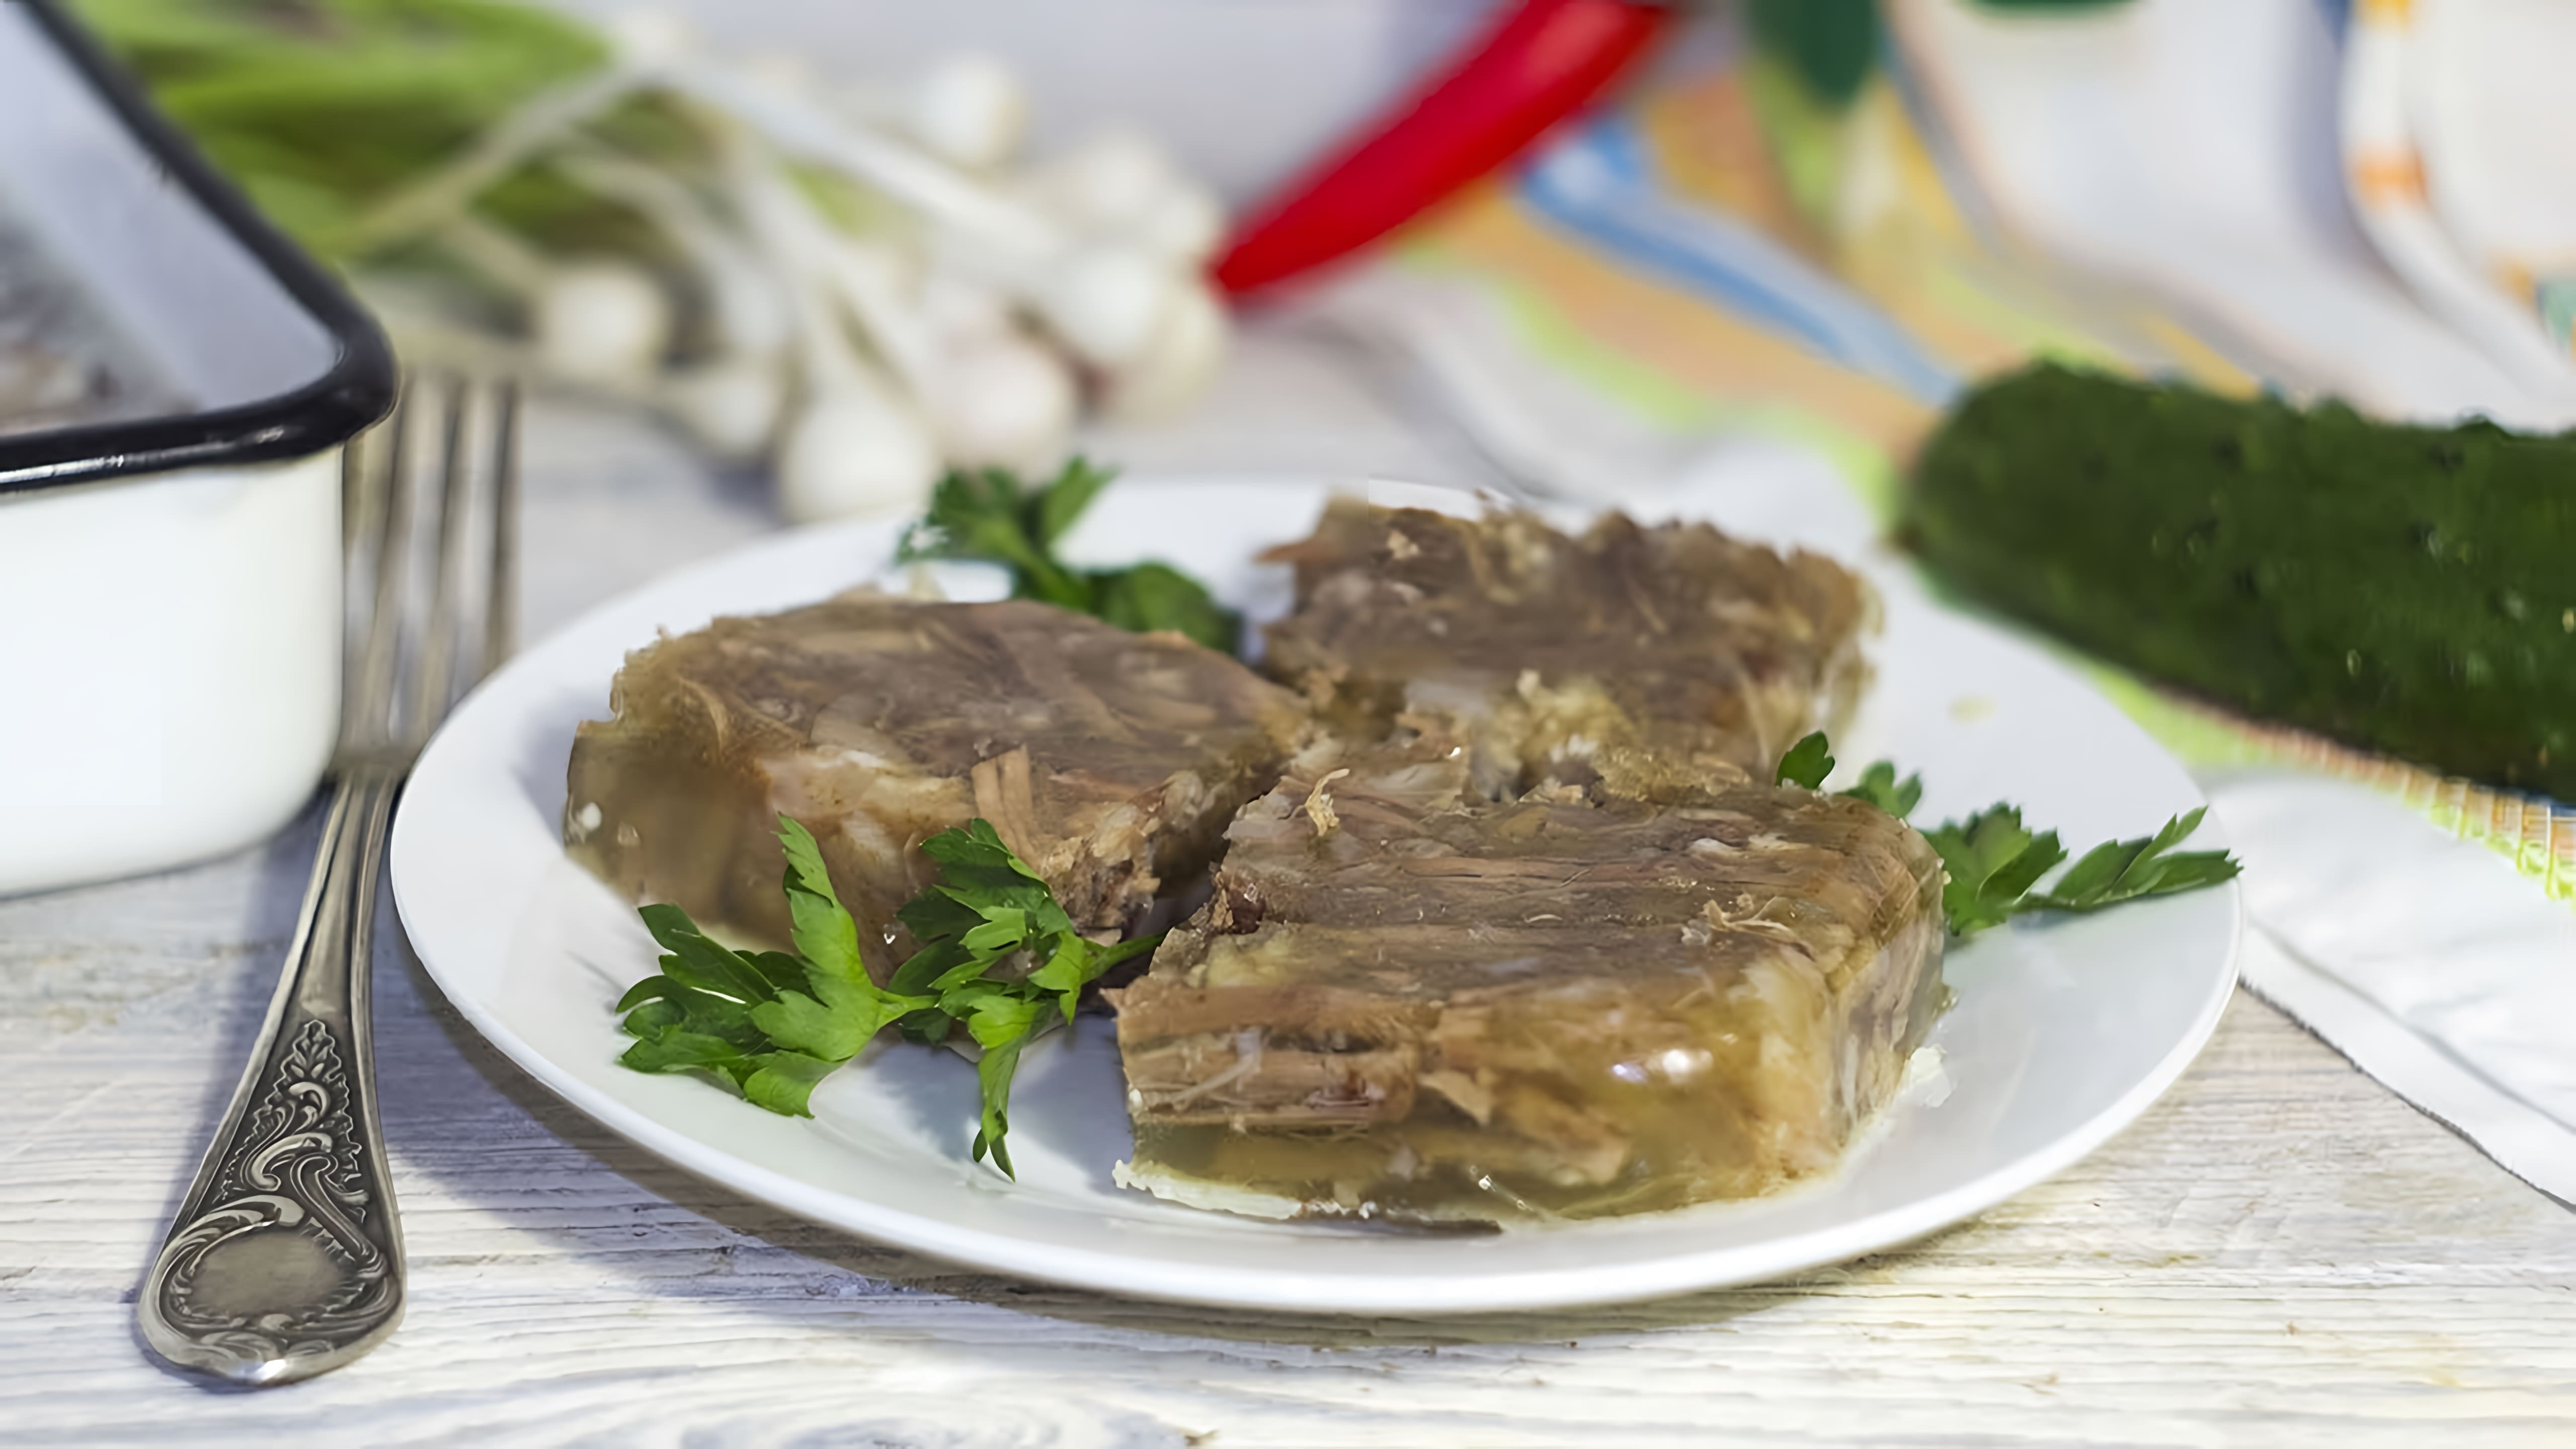 В этом видео-ролике будет представлен рецепт приготовления холодца из свиных ножек и говядины, который является традиционным праздничным блюдом